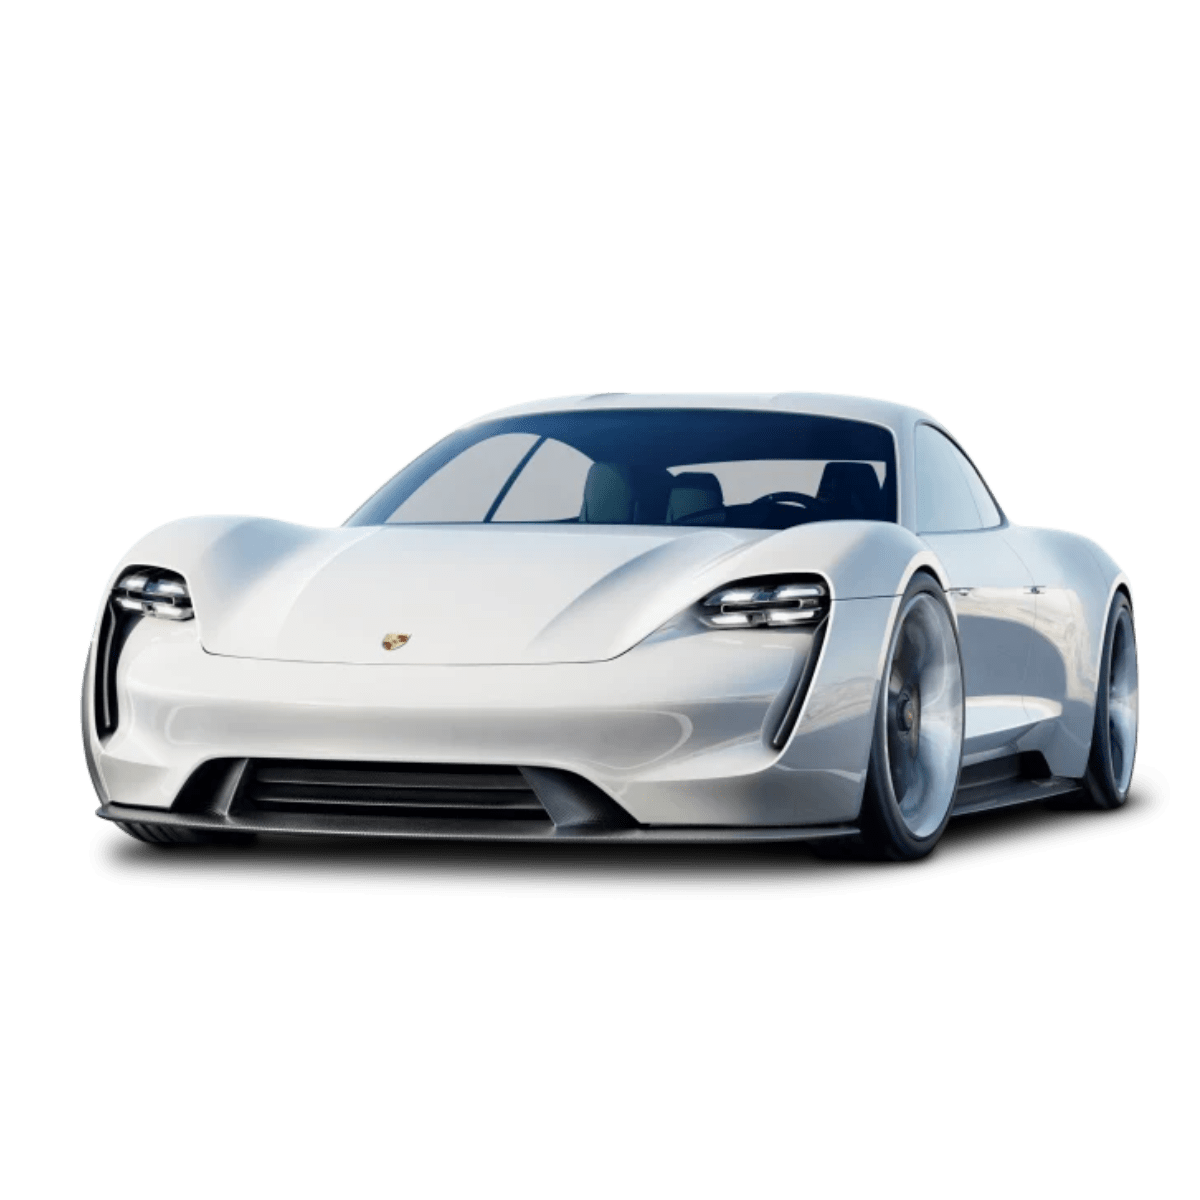 Porsche officialise la Taycan, sa première voiture électrique